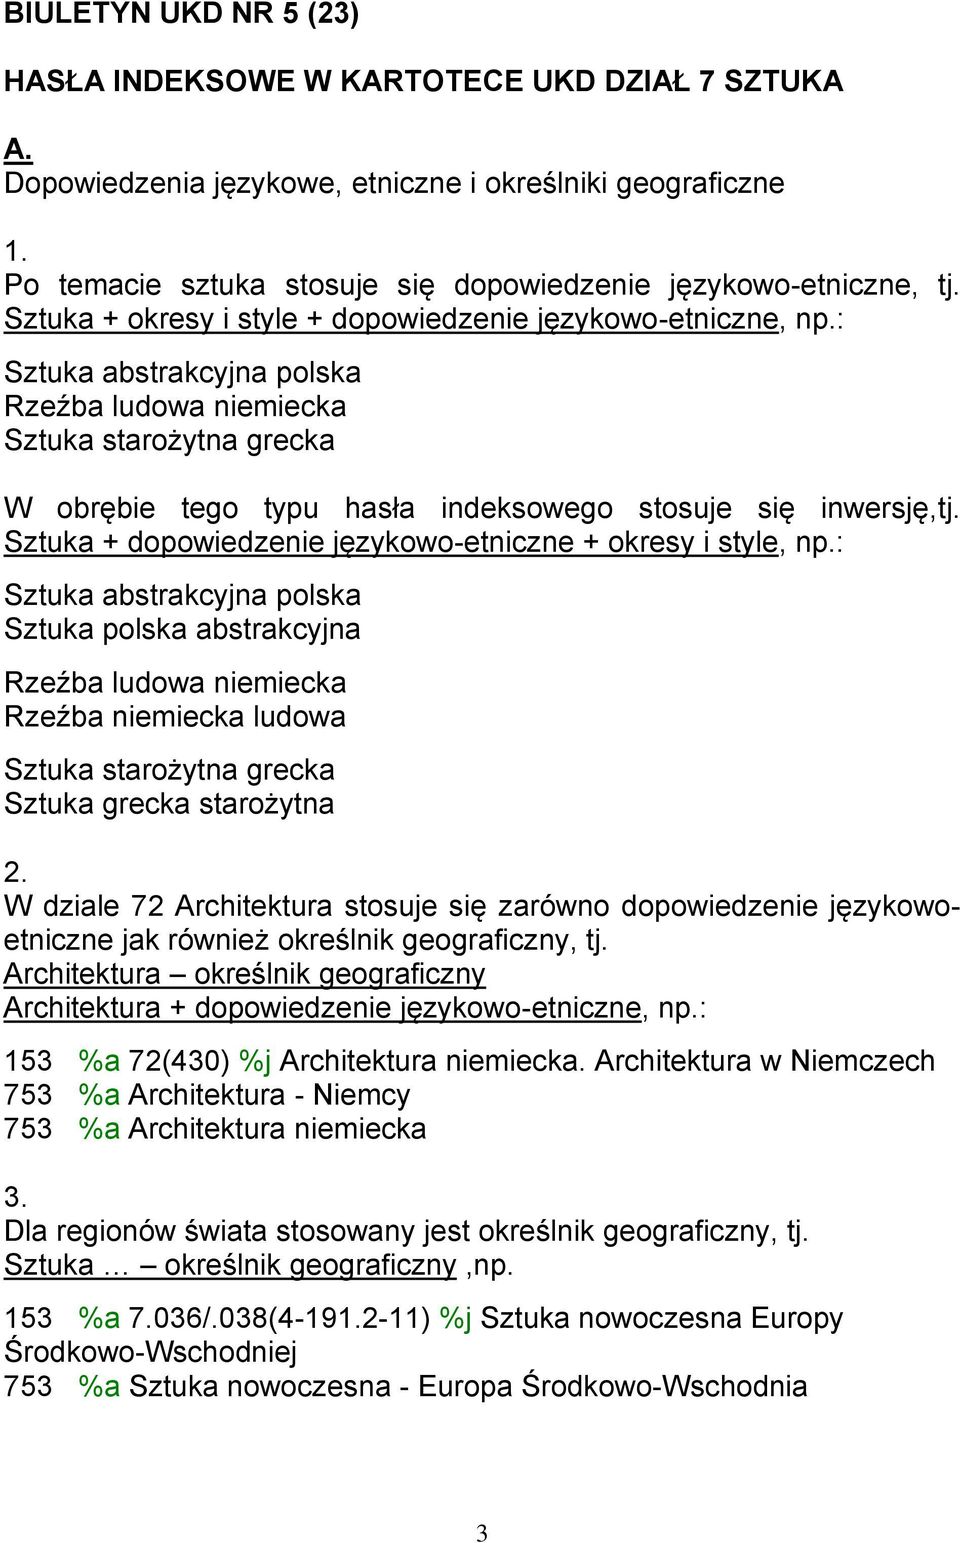 : Sztuka abstrakcyjna polska Rzeźba ludowa niemiecka Sztuka starożytna grecka W obrębie tego typu hasła indeksowego stosuje się inwersję,tj.